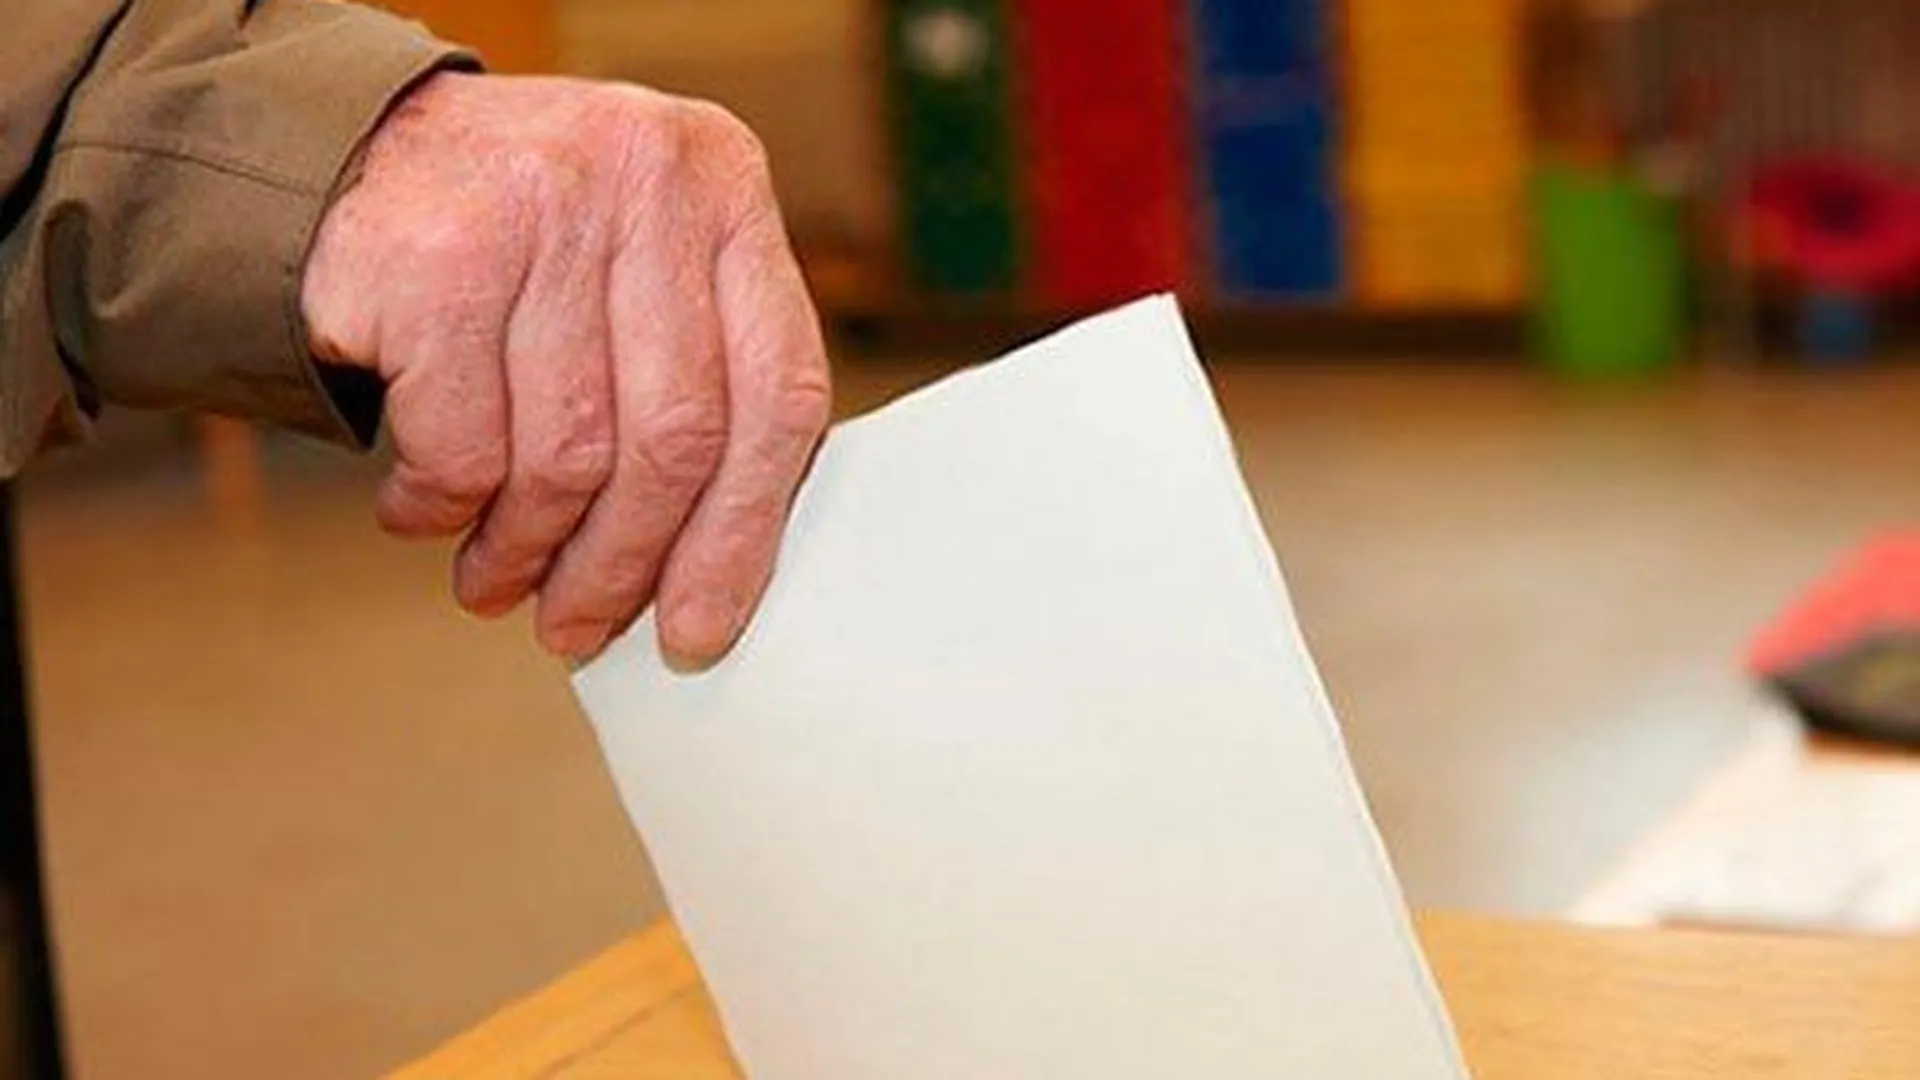 Бюллетени для голосования за рубежом передадут Мособлизбиркому 18 августа